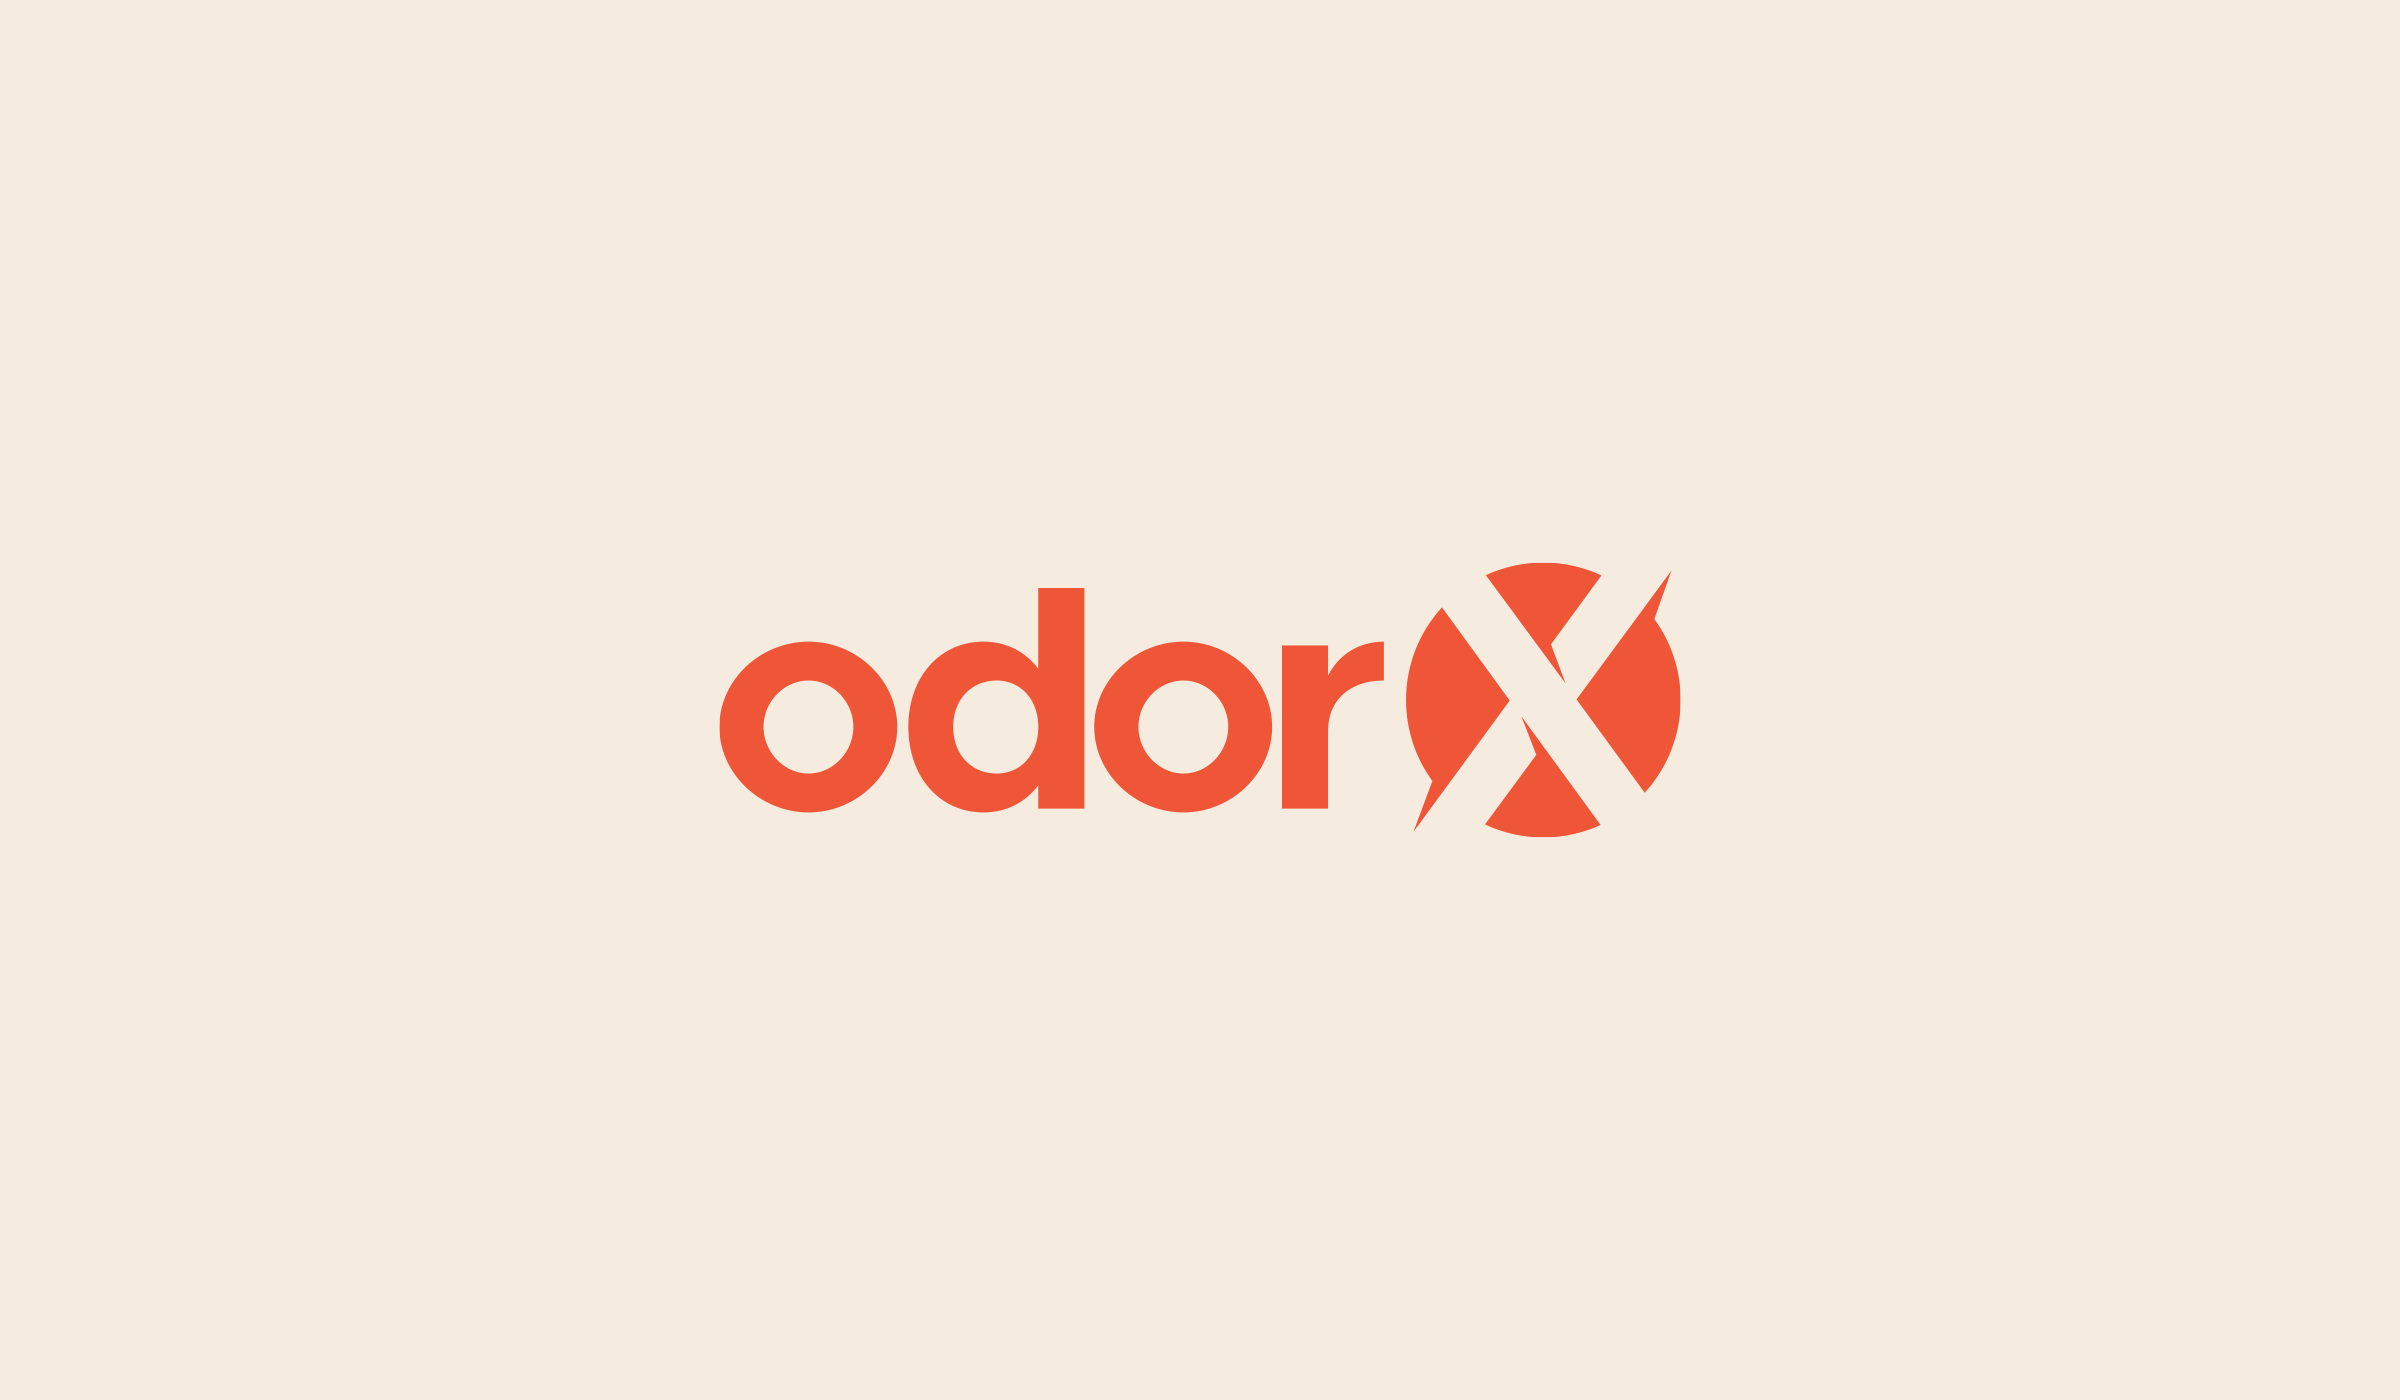 odorx.com